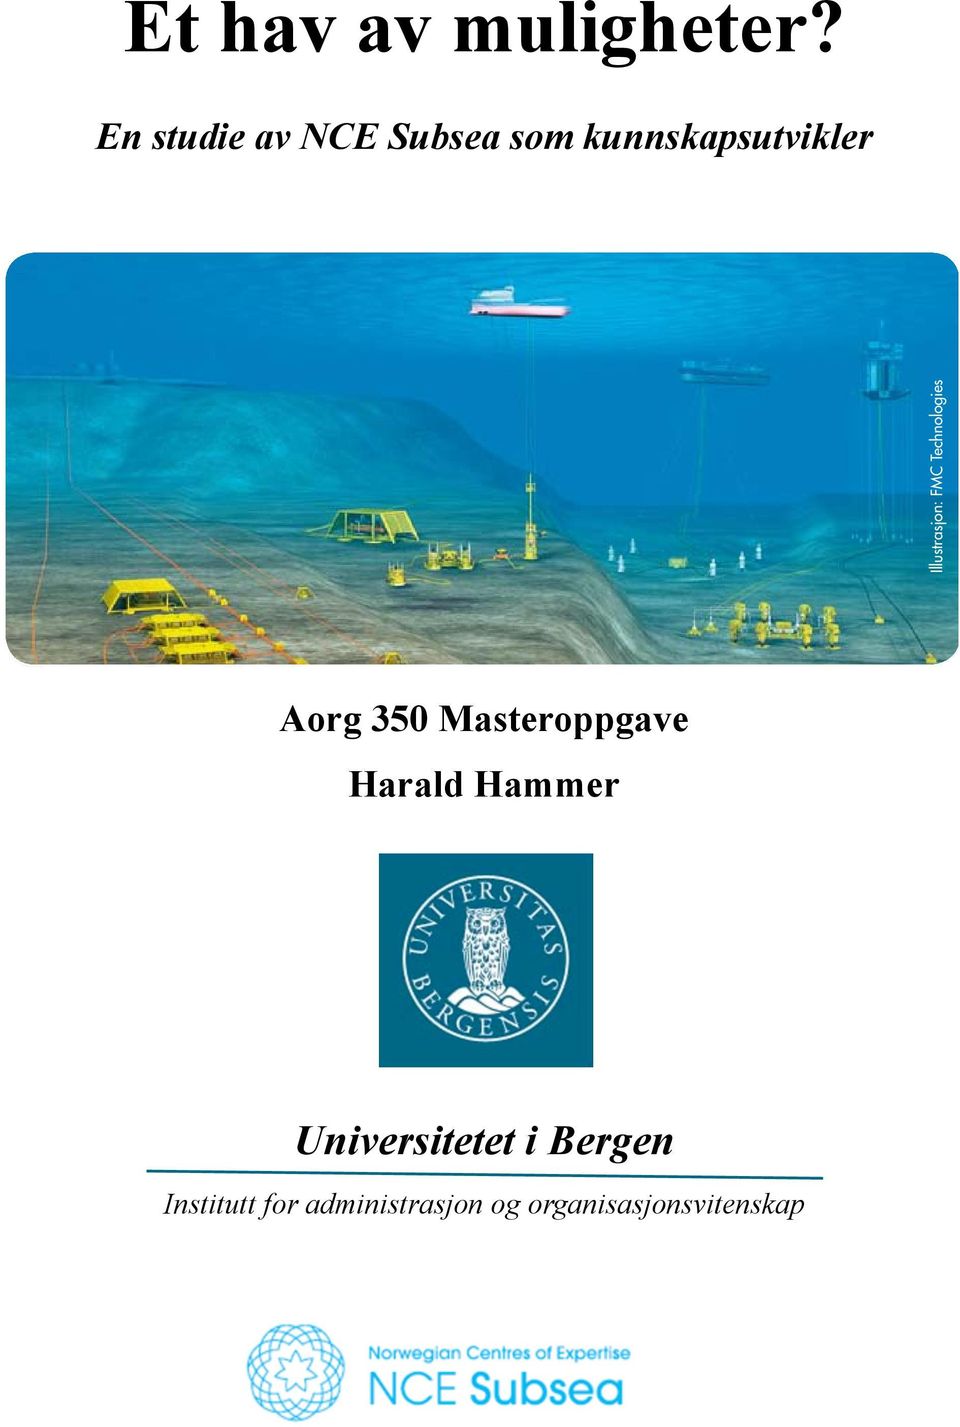 Høgskolen i Bergen og Norges teknisk-naturvitenskaplige universitet (NTNU) planlegger et samarbeid om etablering av en ny masterutdanning innen undervannsteknologi med oppstart høsten 2009.